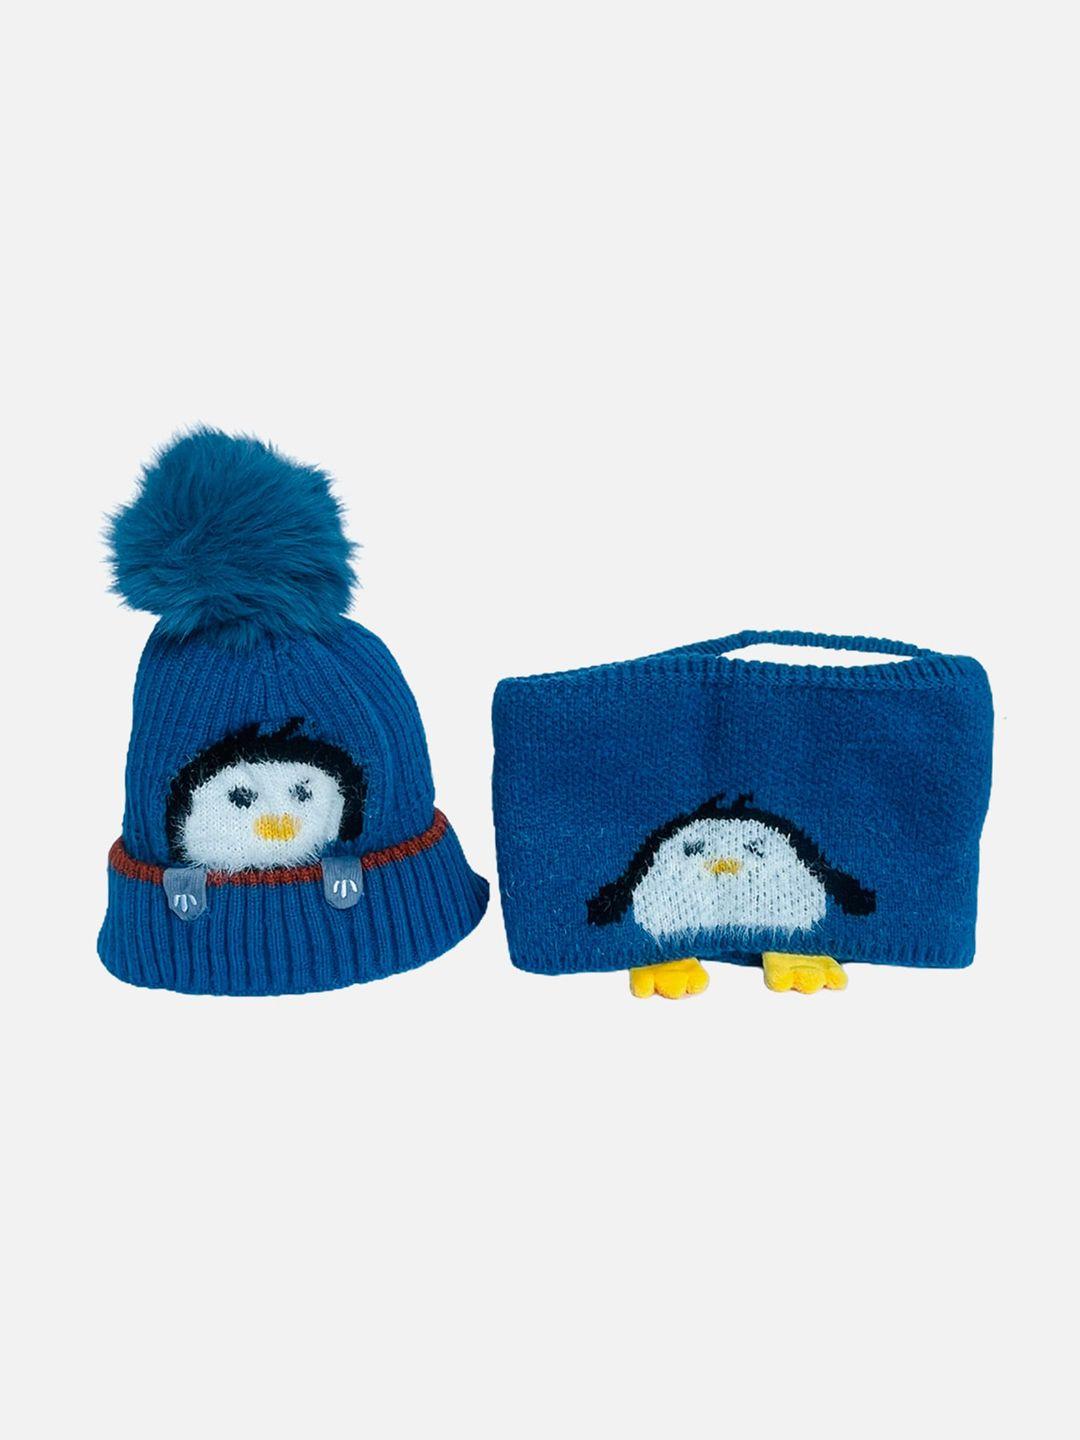 little surprise box llp infant penguin woven wool winter cap & muffler set